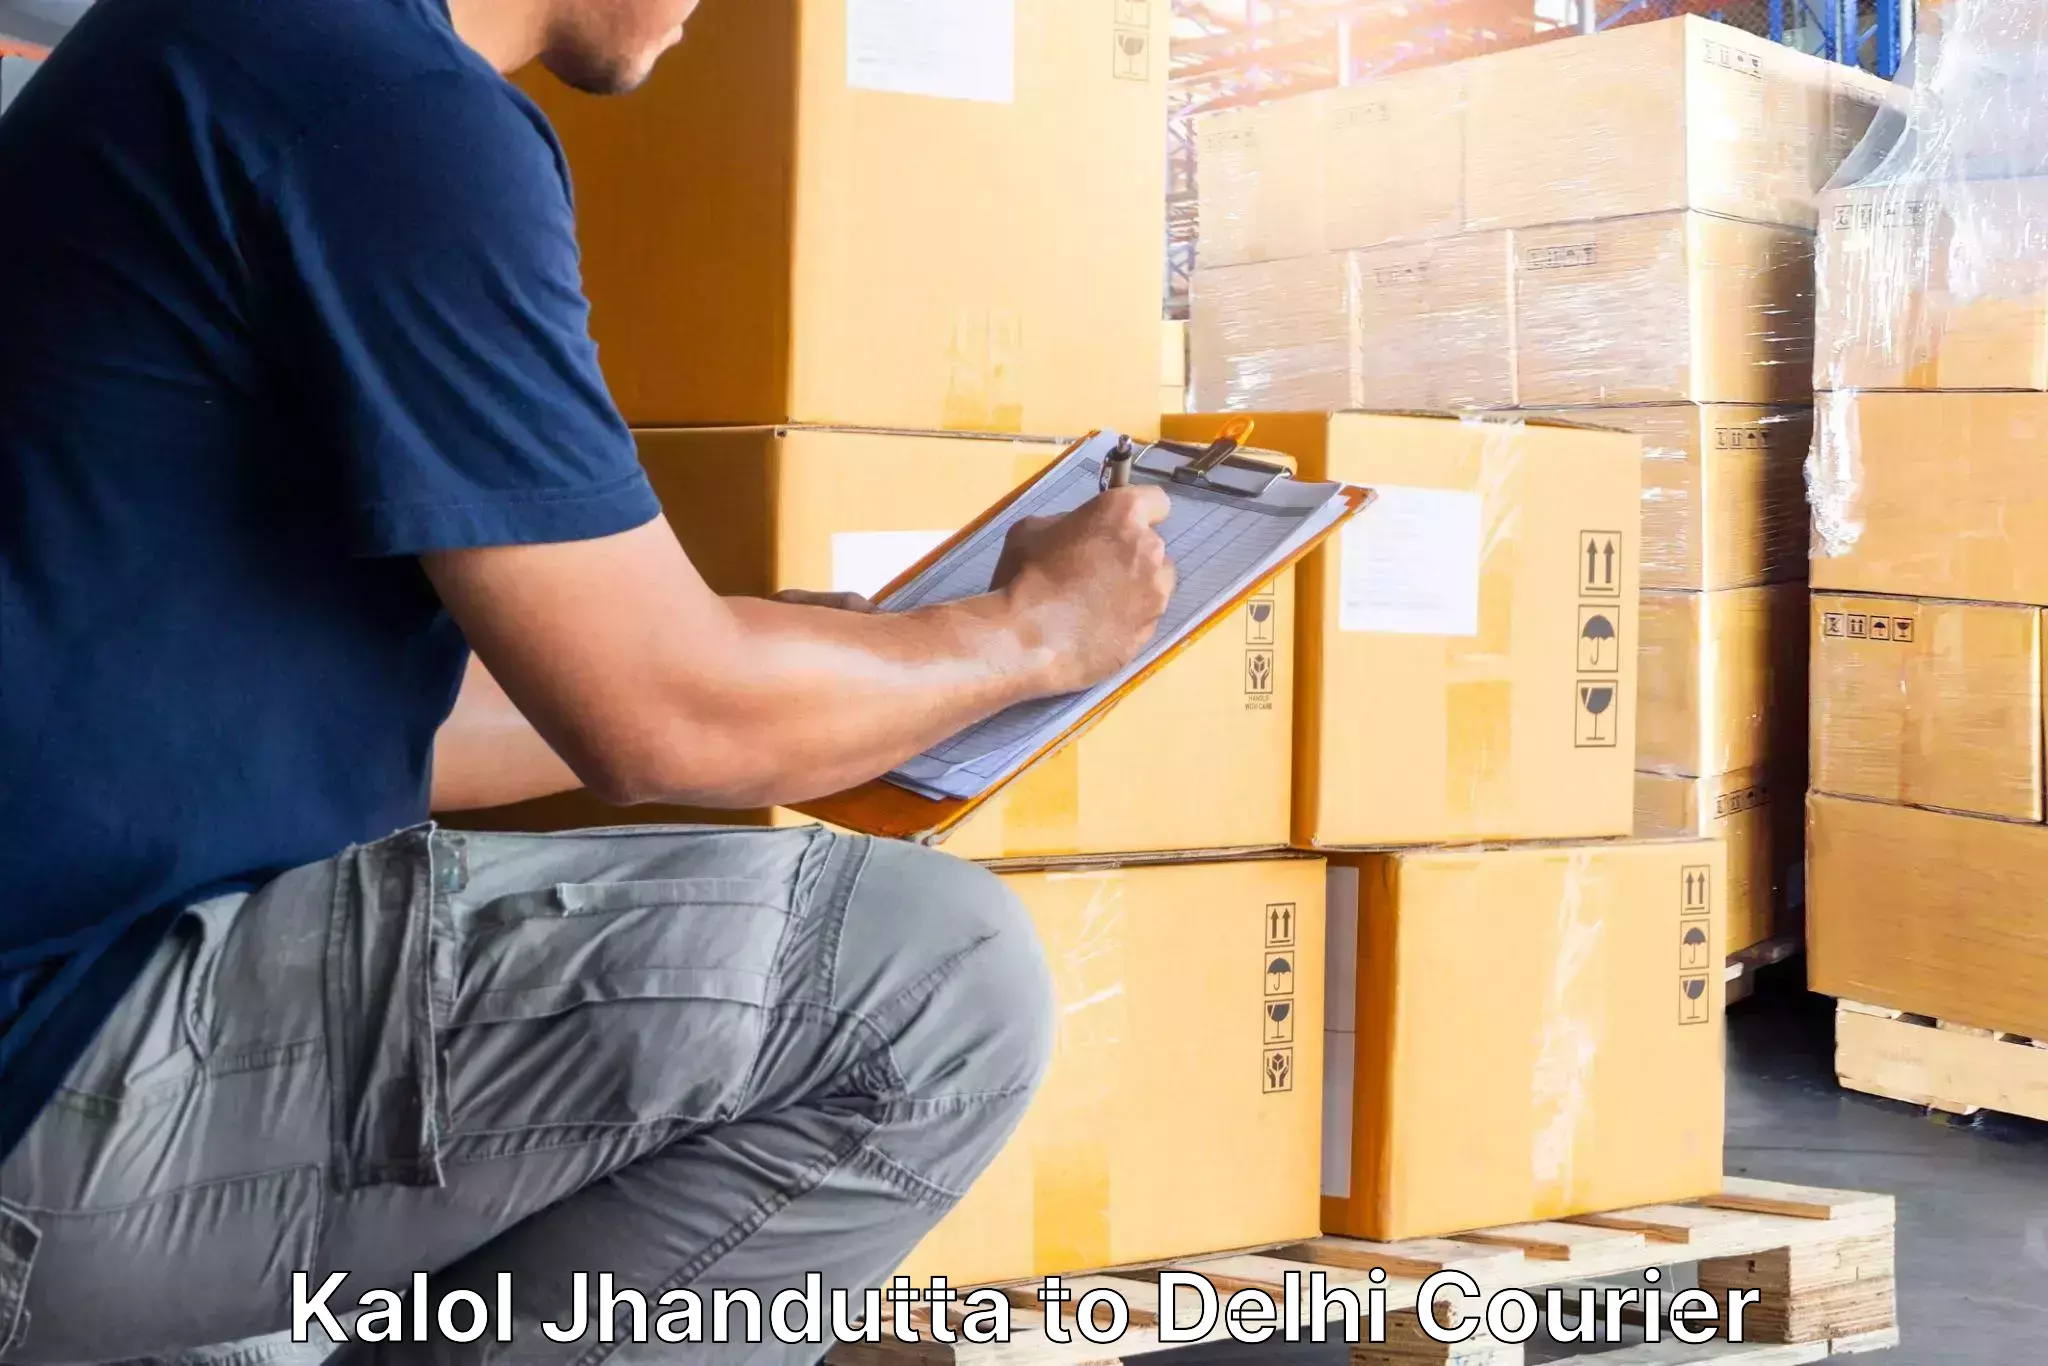 Moving and storage services Kalol Jhandutta to Delhi